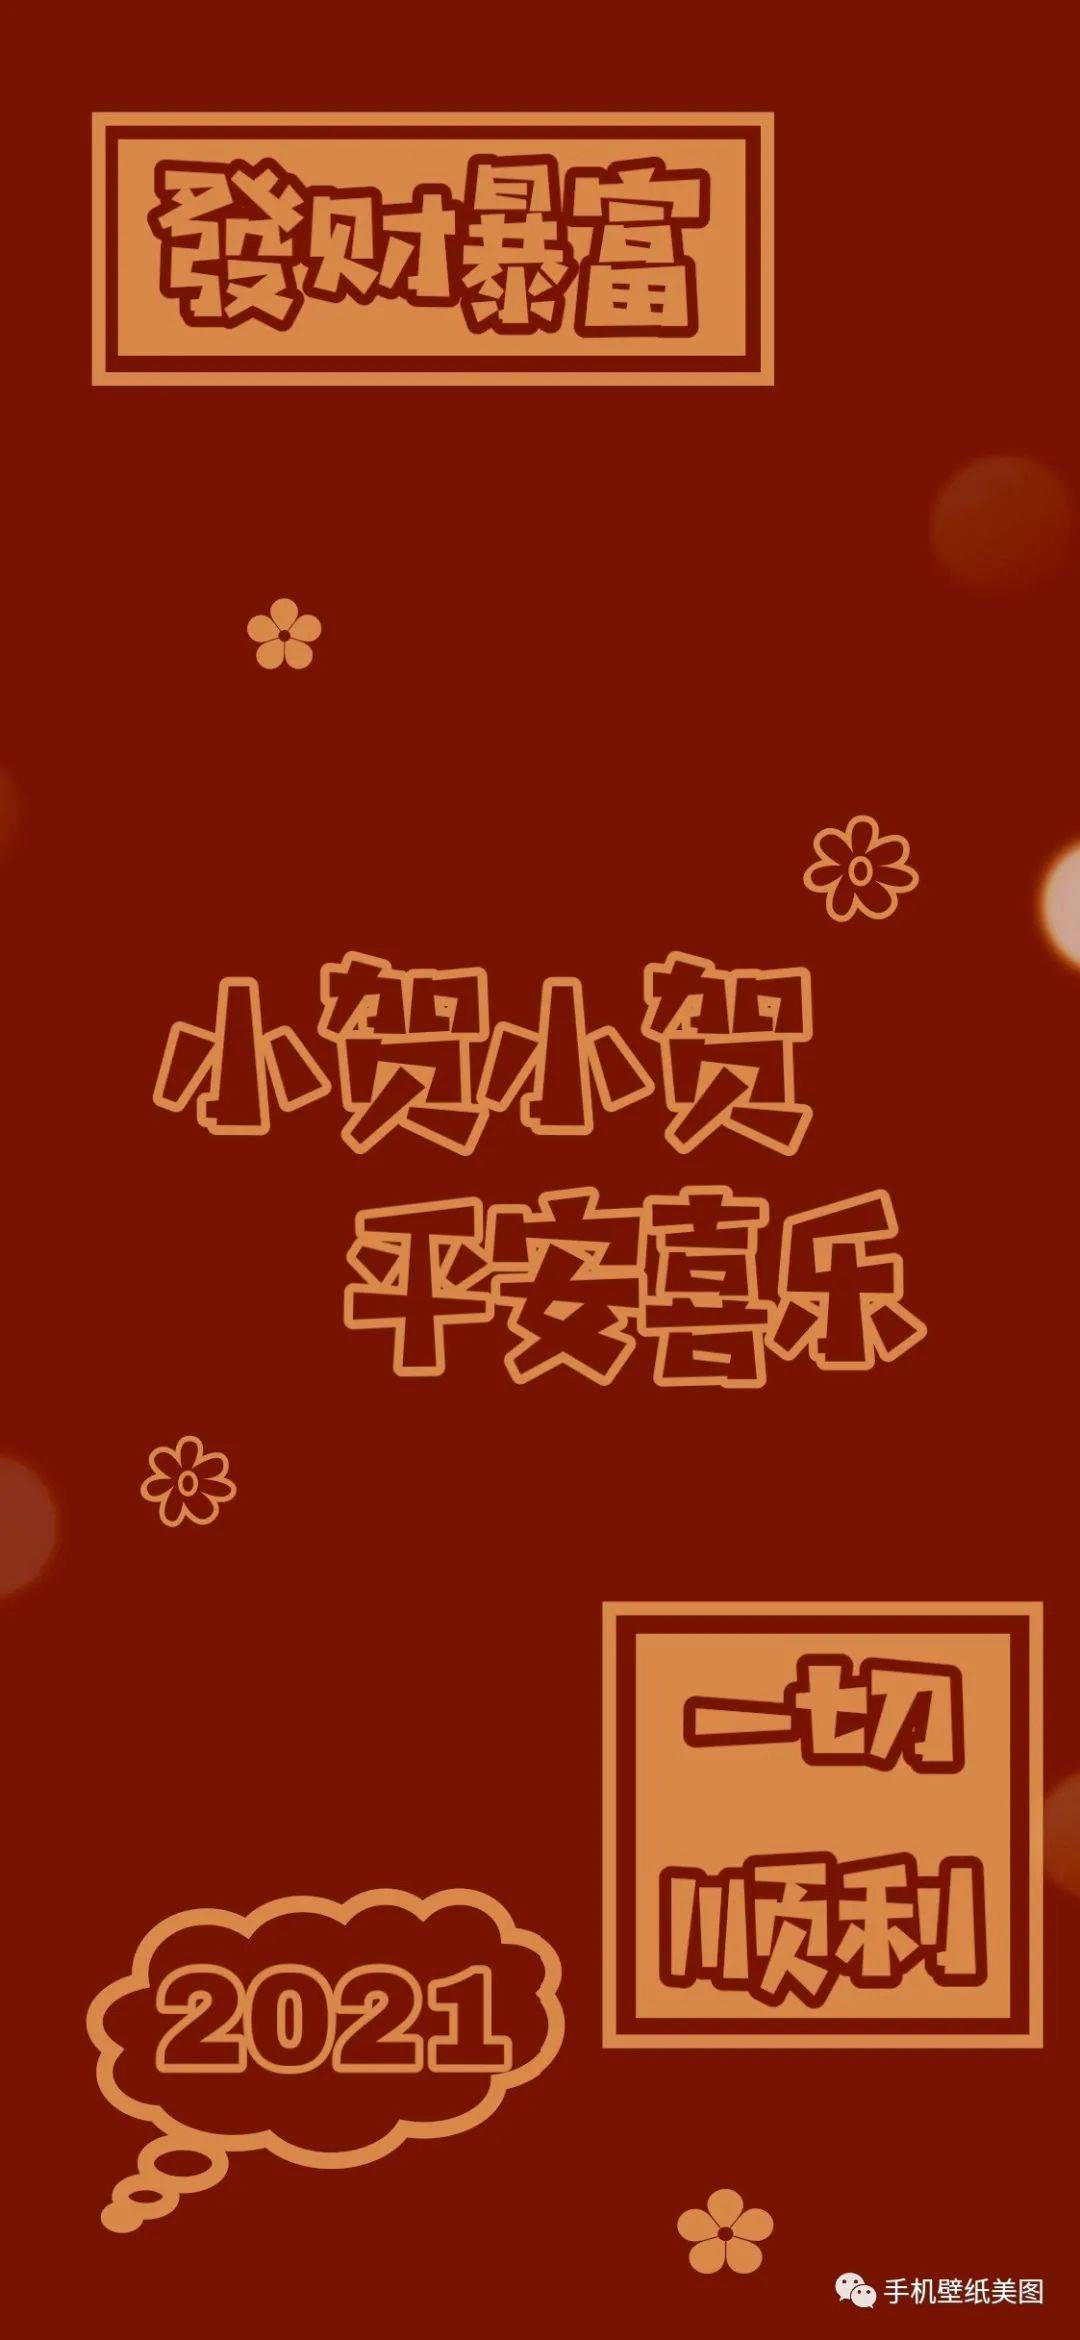 
2021姓氏壁纸制作 百家姓壁纸大全【jbo竞博官网】(图3)